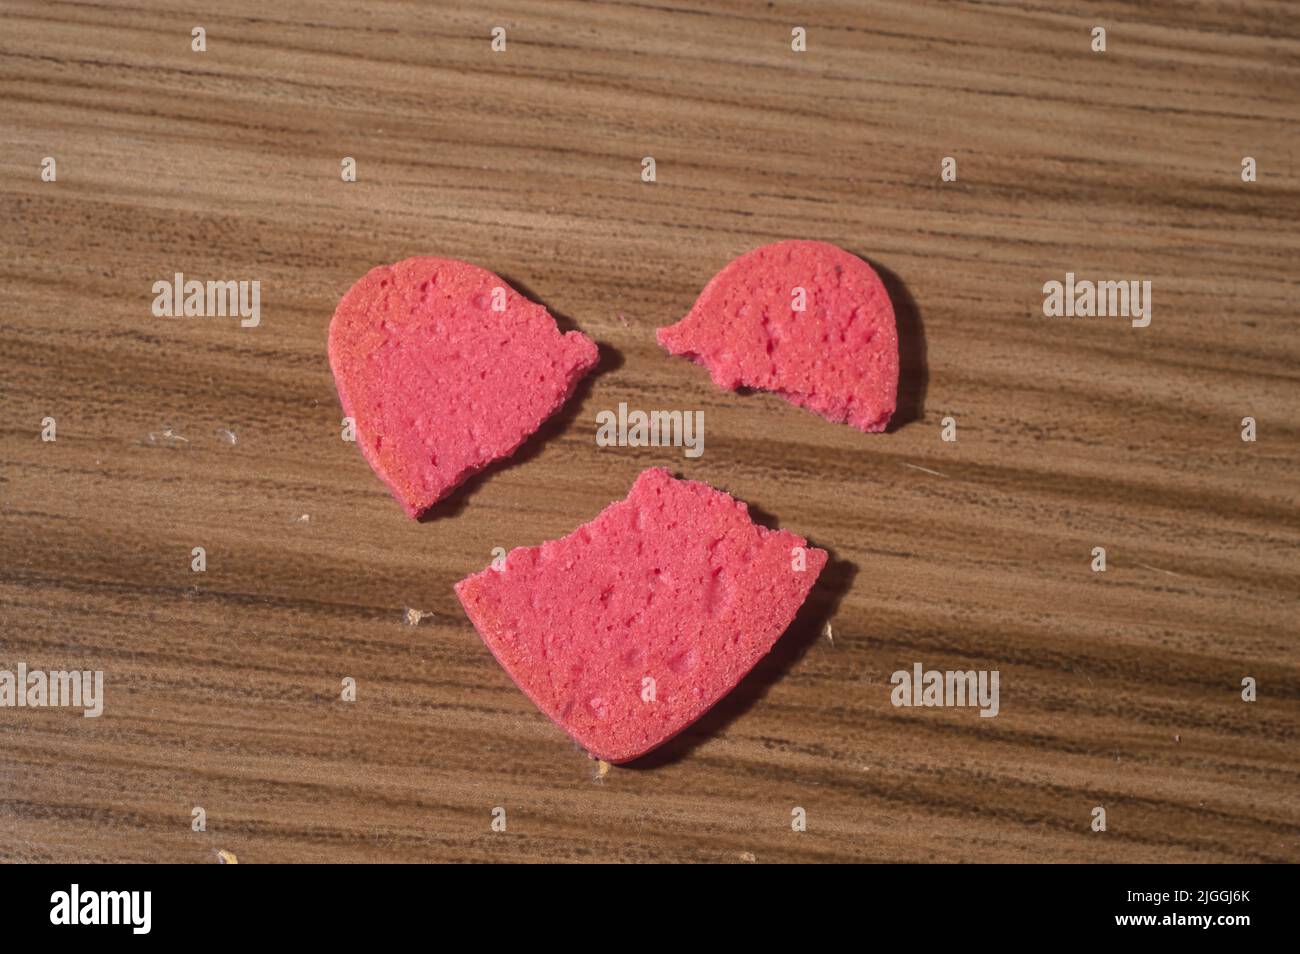 Coeur brisé travail en morceaux, en forme de coeur brisé biscuit sur une table en bois. Banque D'Images